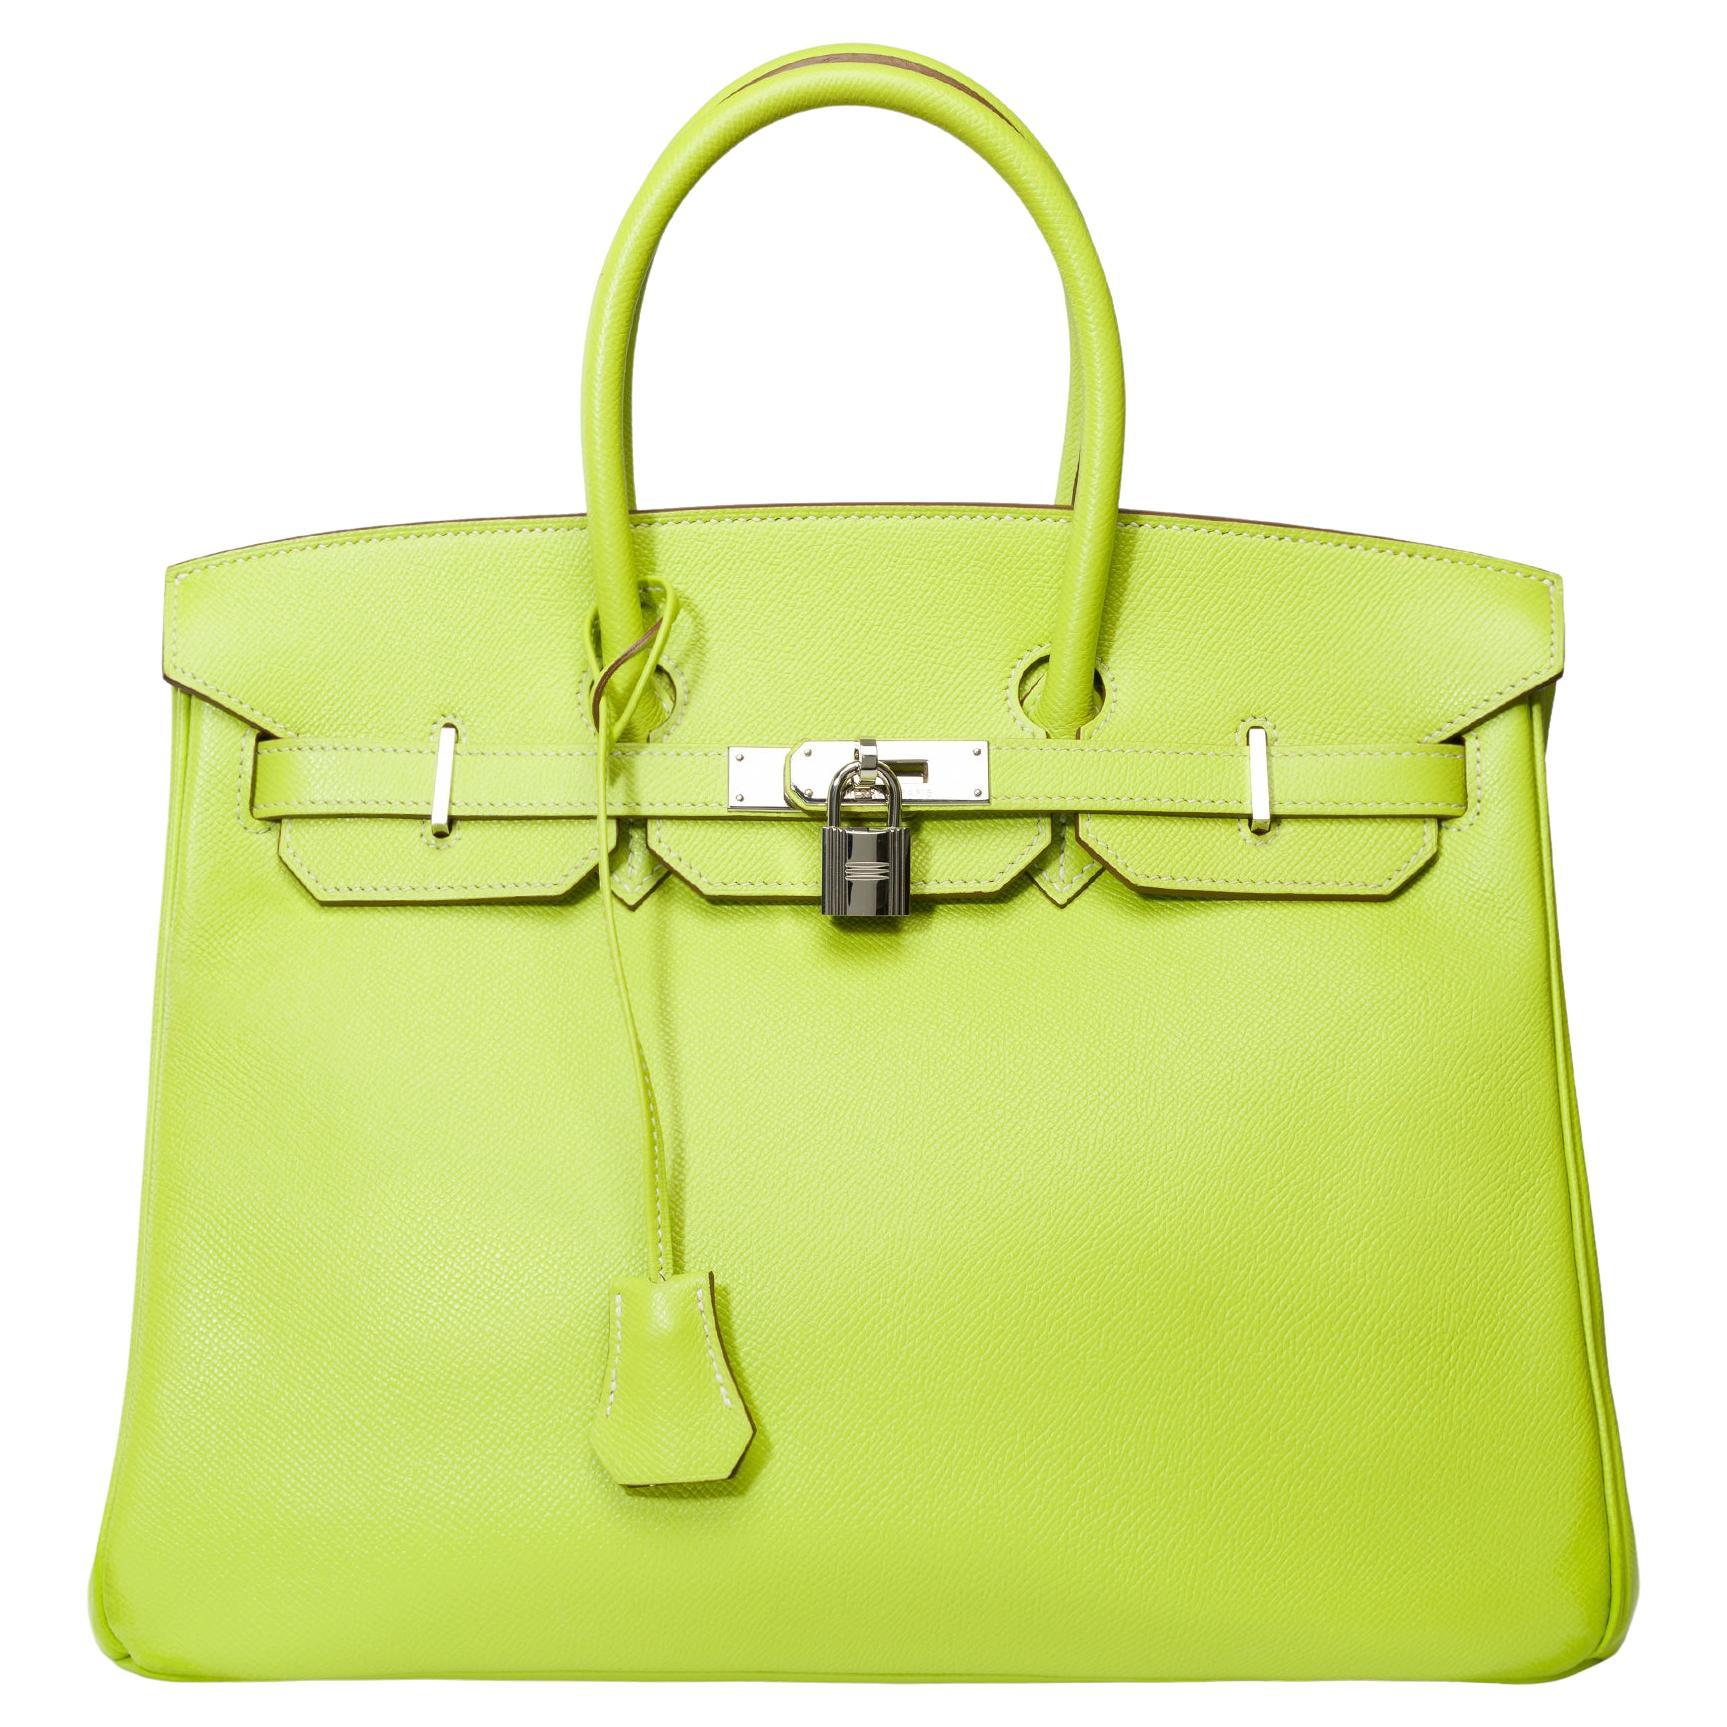 Candy limited edition Hermès Birkin 35 handbag in Kiwi Green epsom leather, SHW